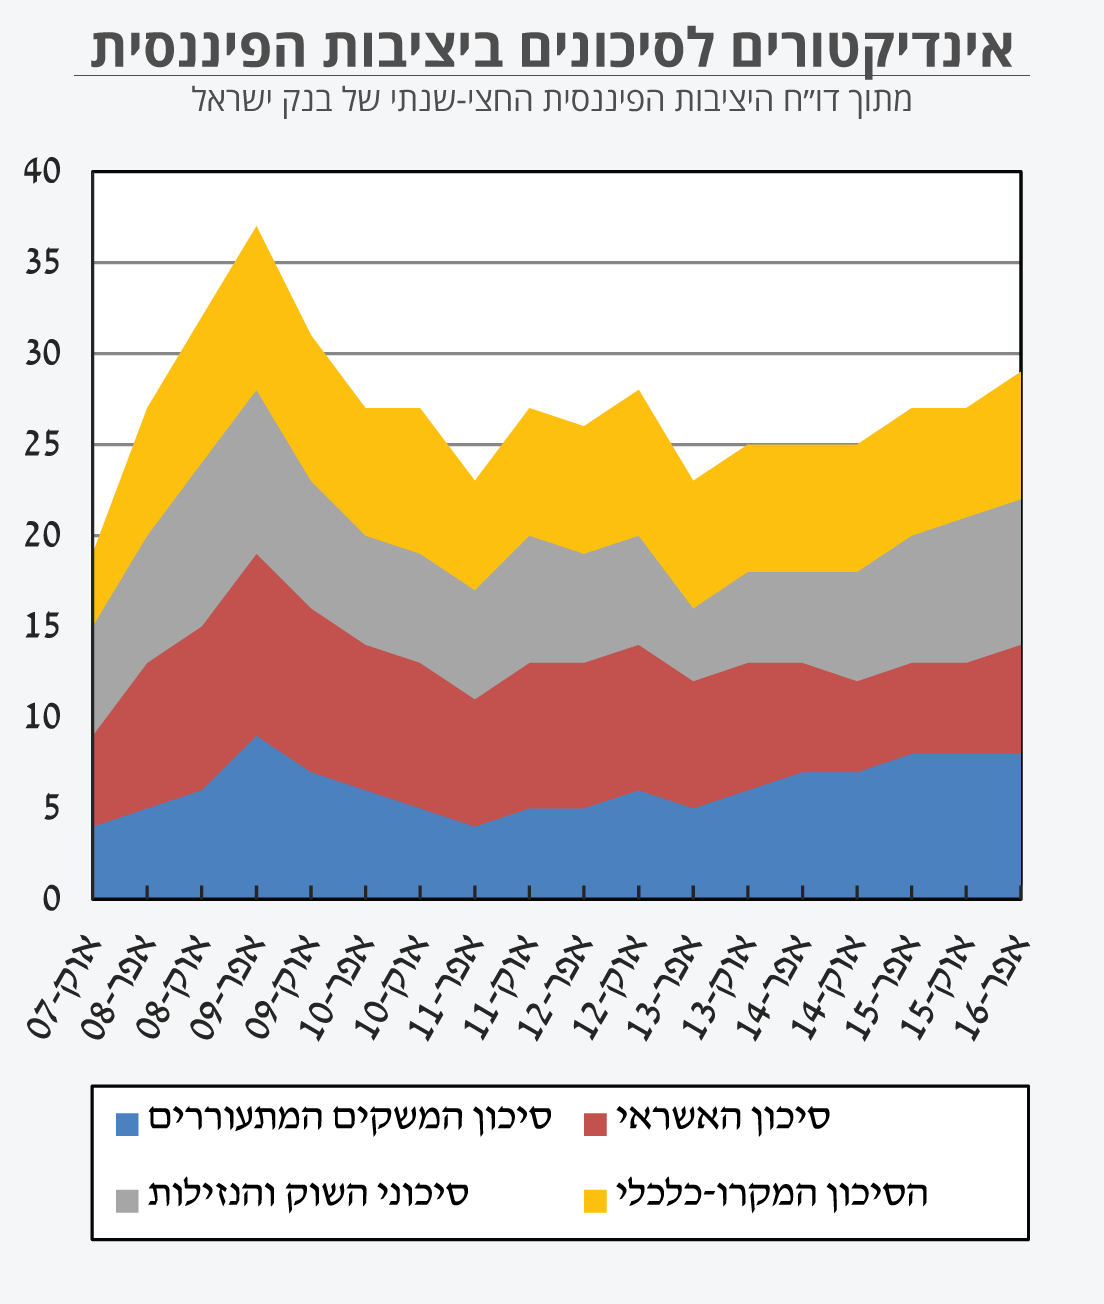 מתוך דו״ח היציבות הפיננסית החצי-שנתי של בנק ישראל